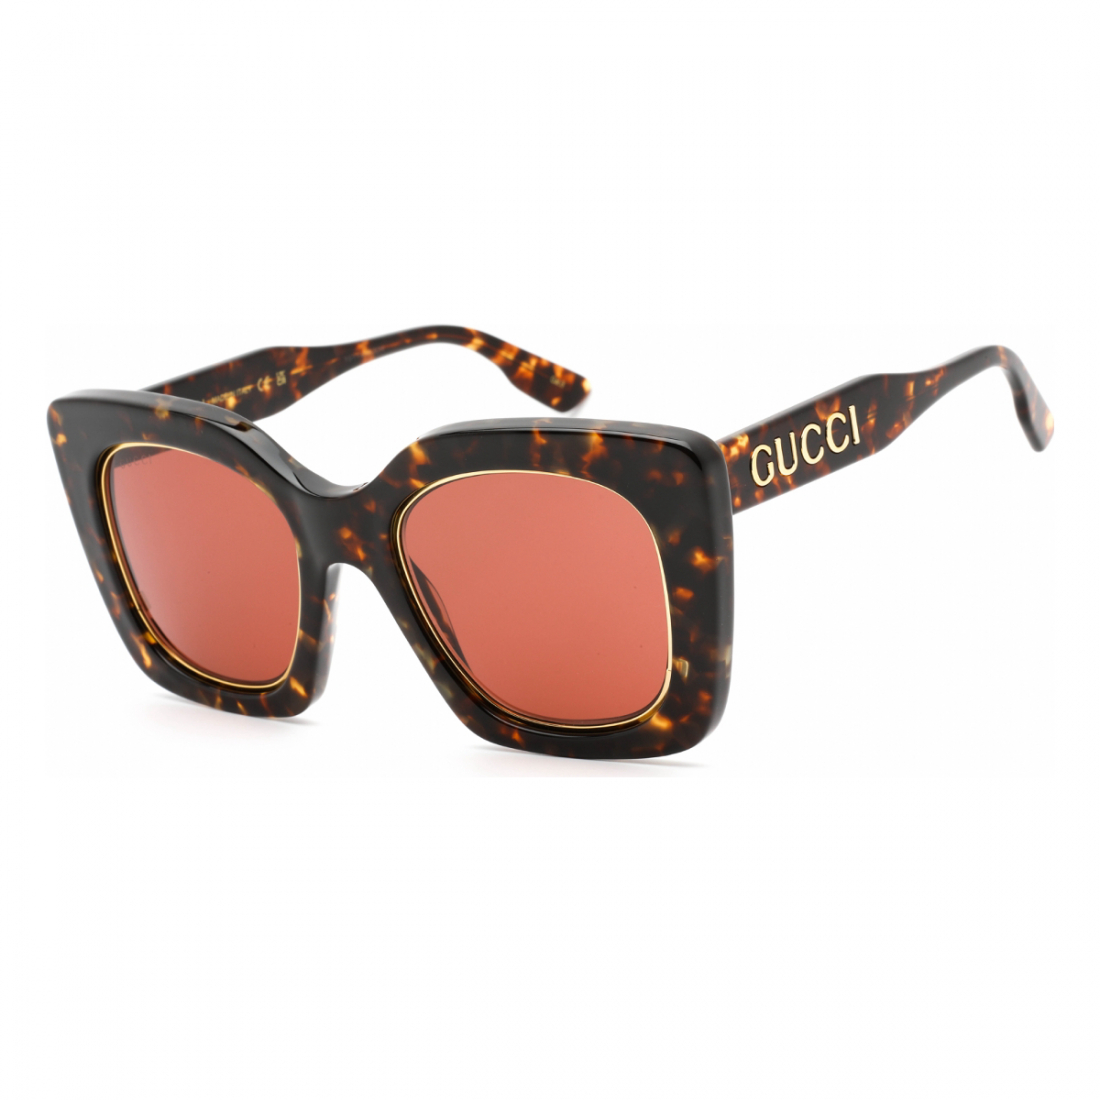 Women's 'GG1151S' Sunglasses